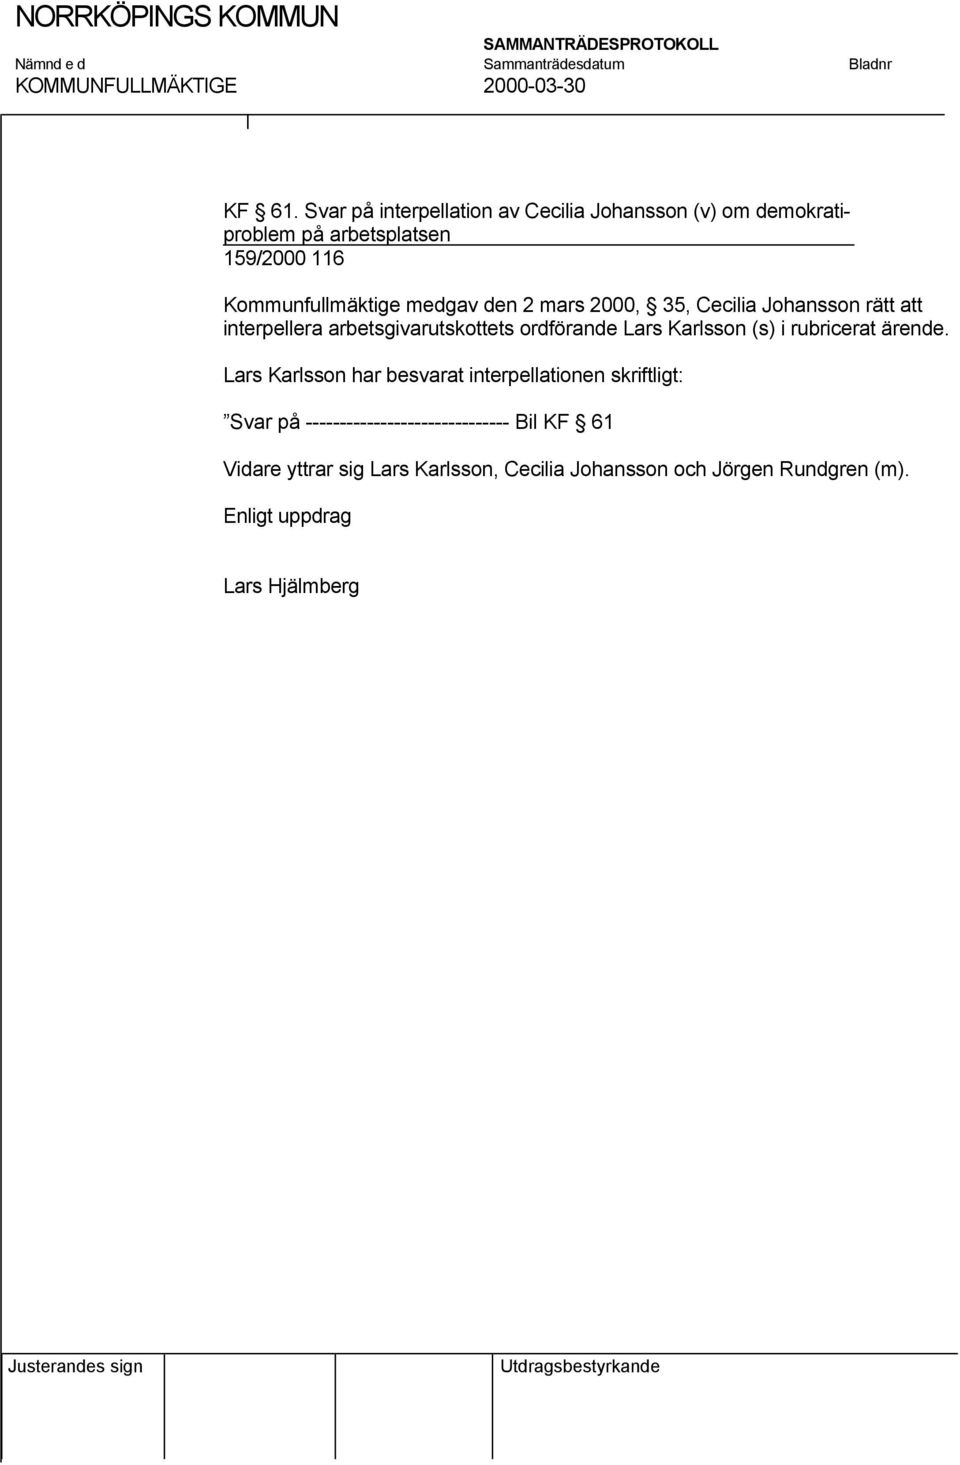 Kommunfullmäktige medgav den 2 mars 2000, 35, Cecilia Johansson rätt att interpellera arbetsgivarutskottets